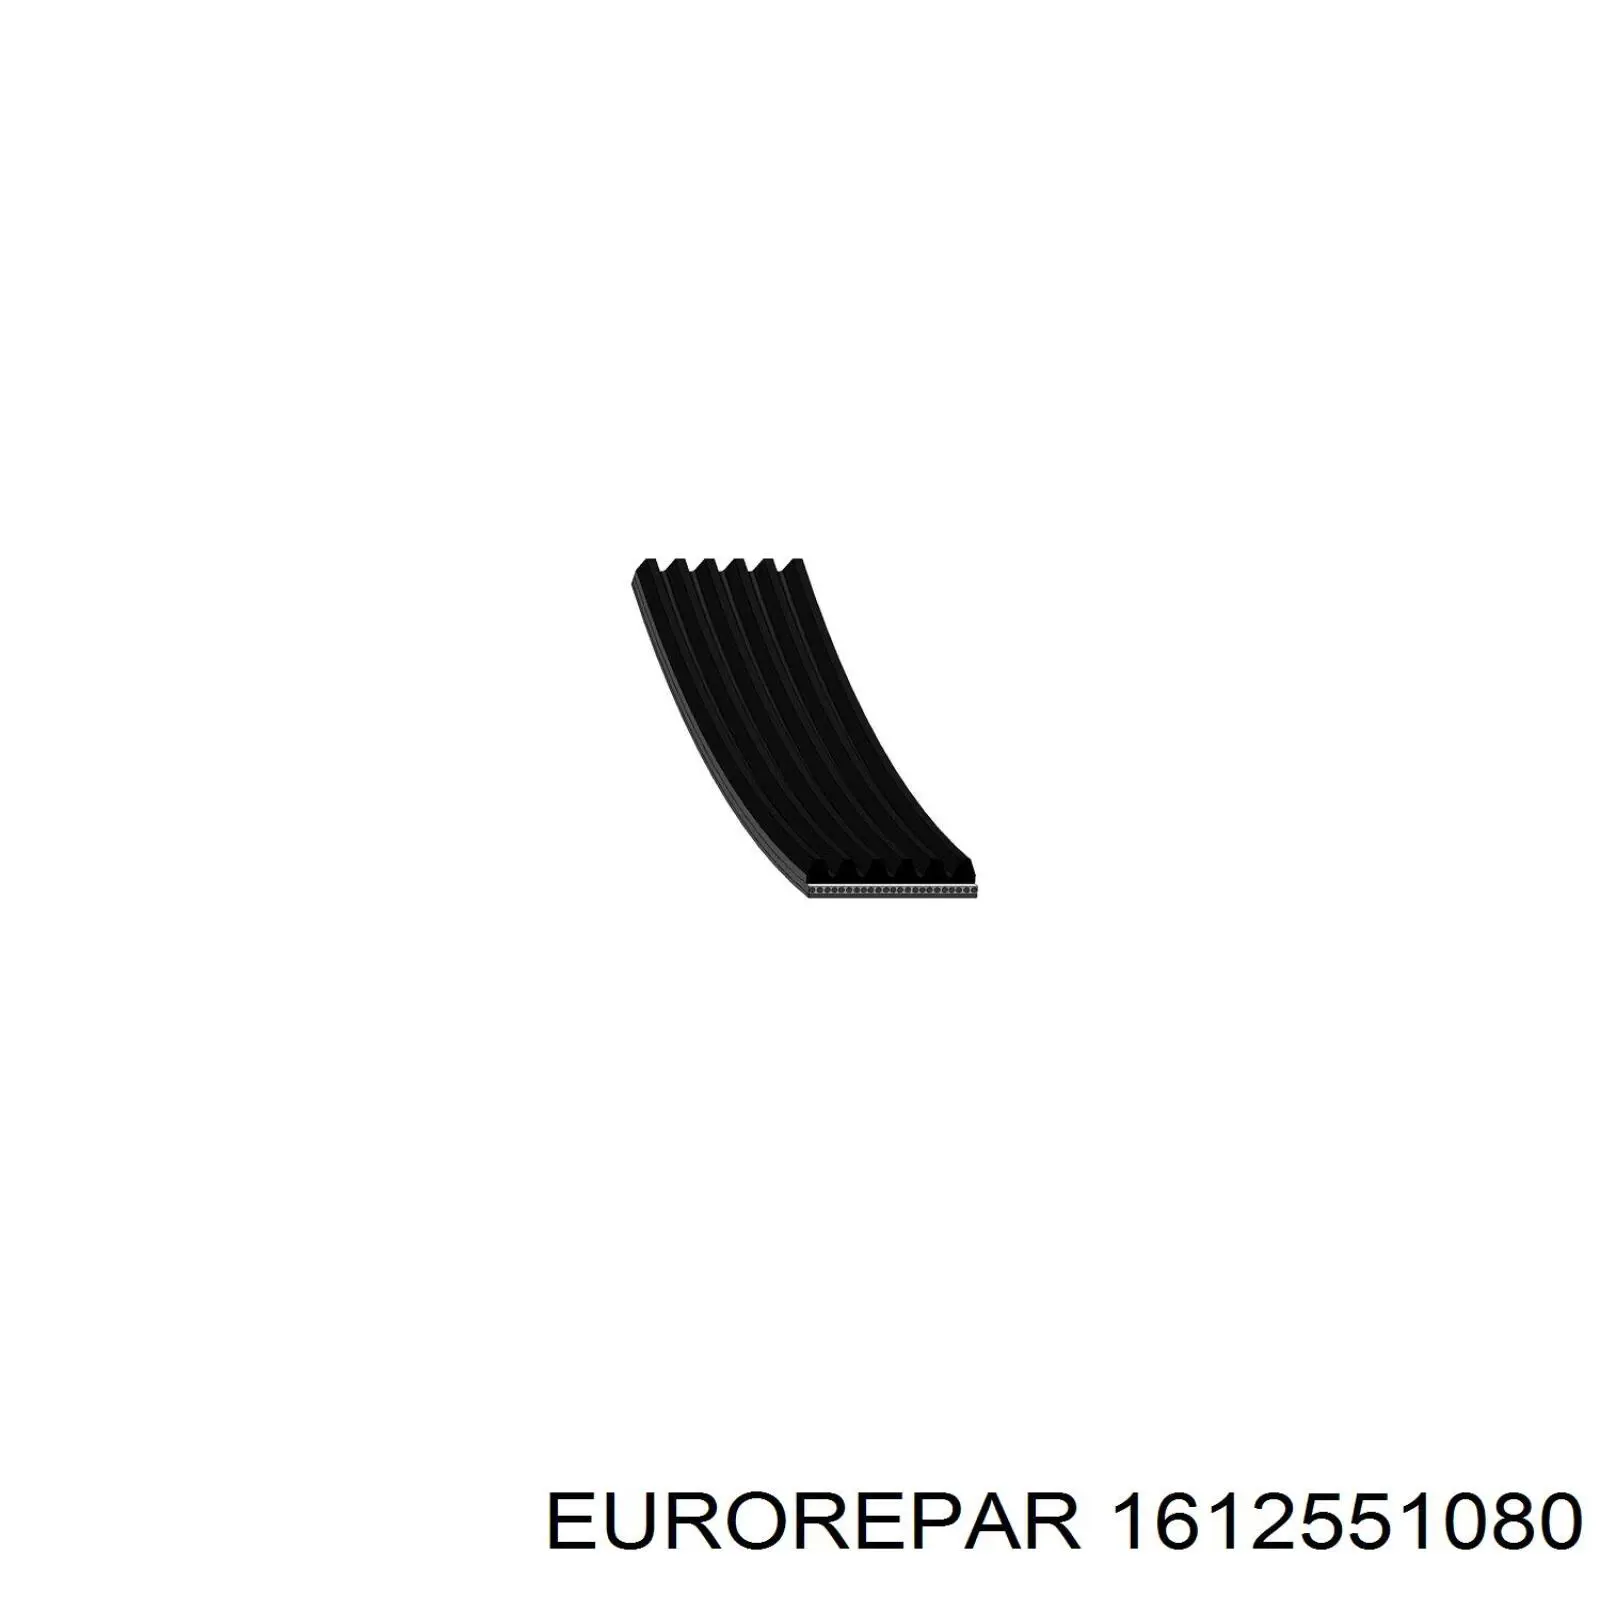 1612551080 Eurorepar correa trapezoidal